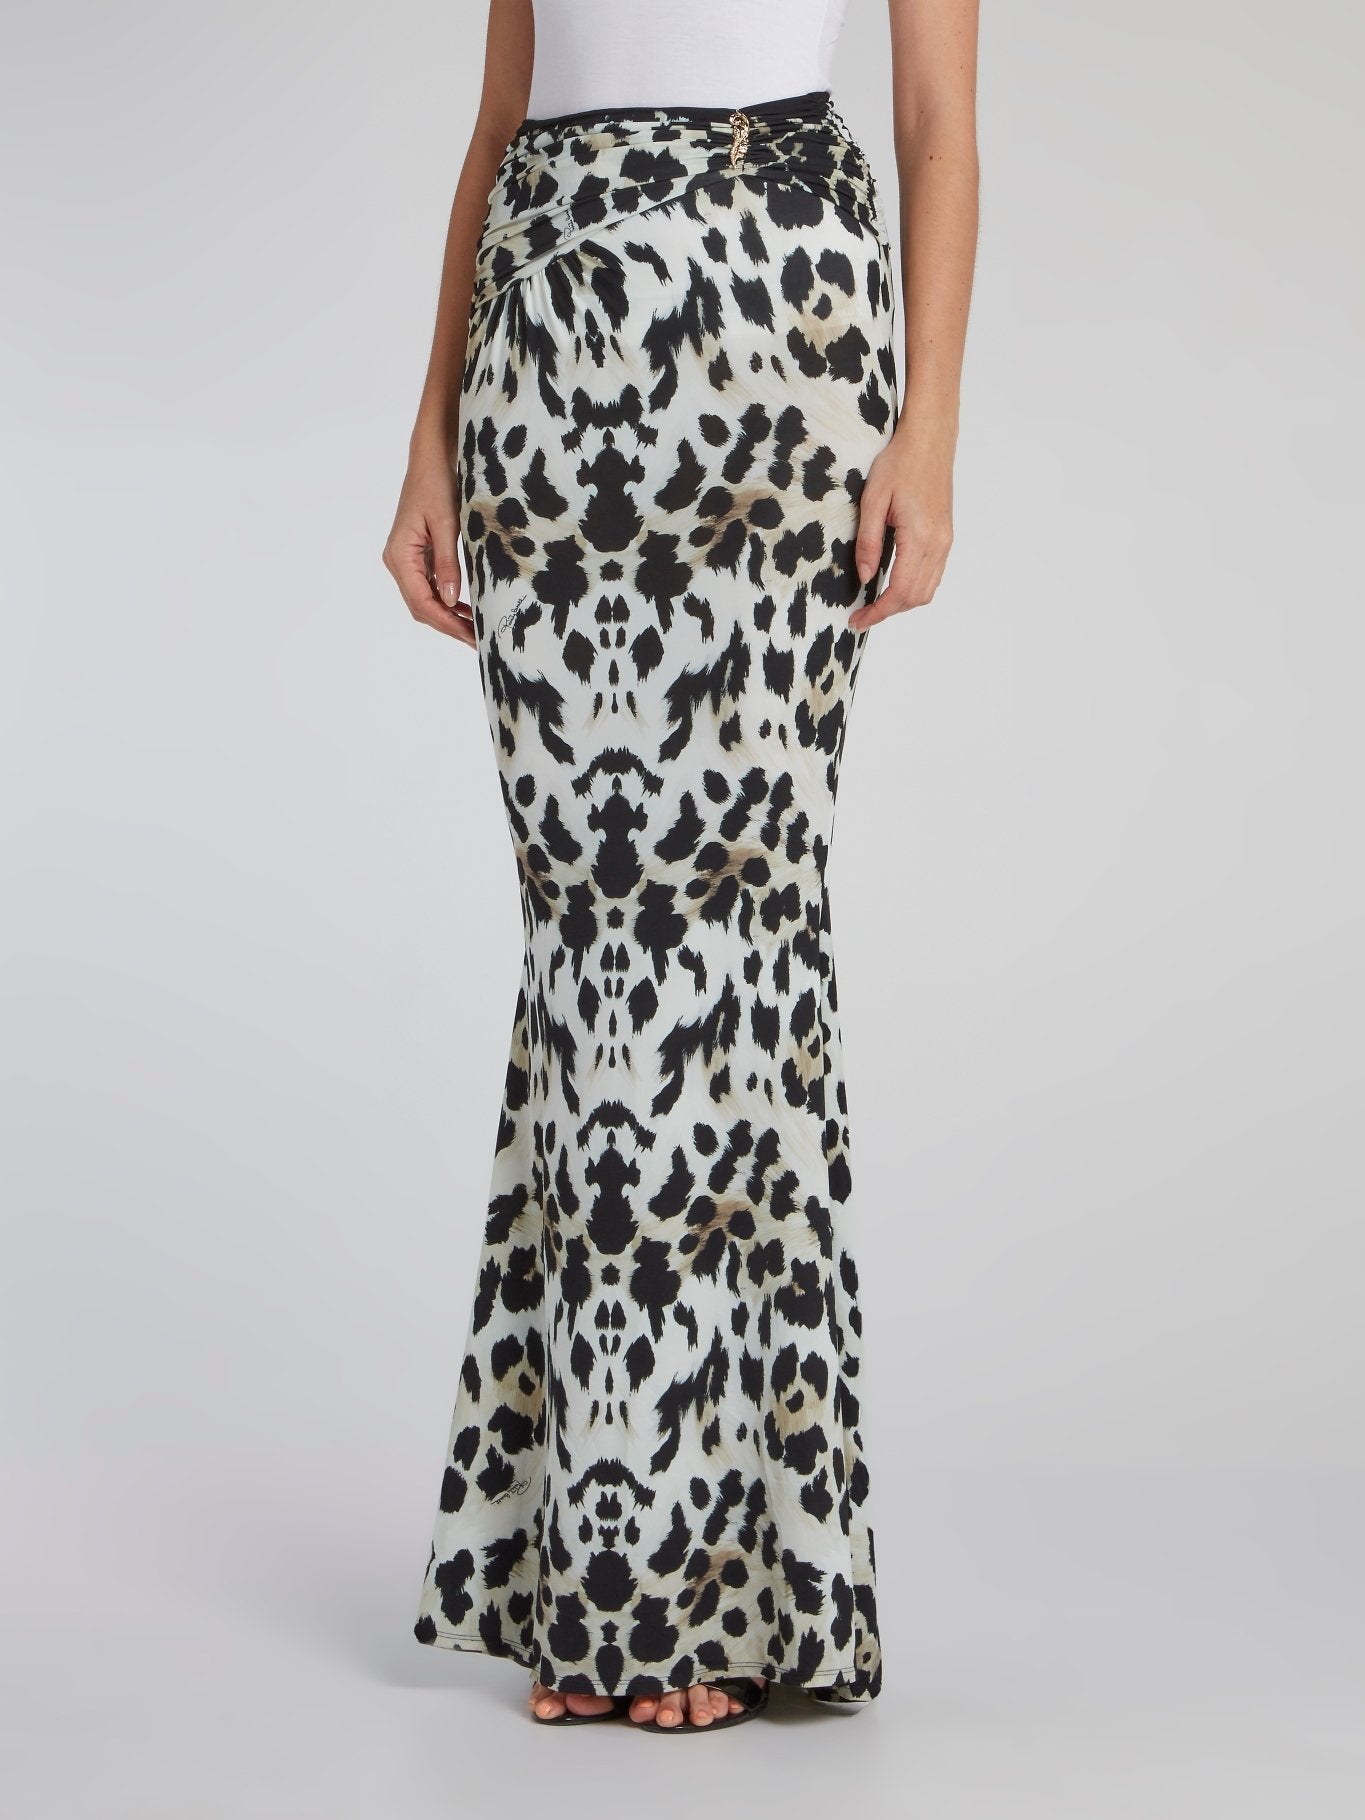 Leopard Print Draped Maxi Skirt